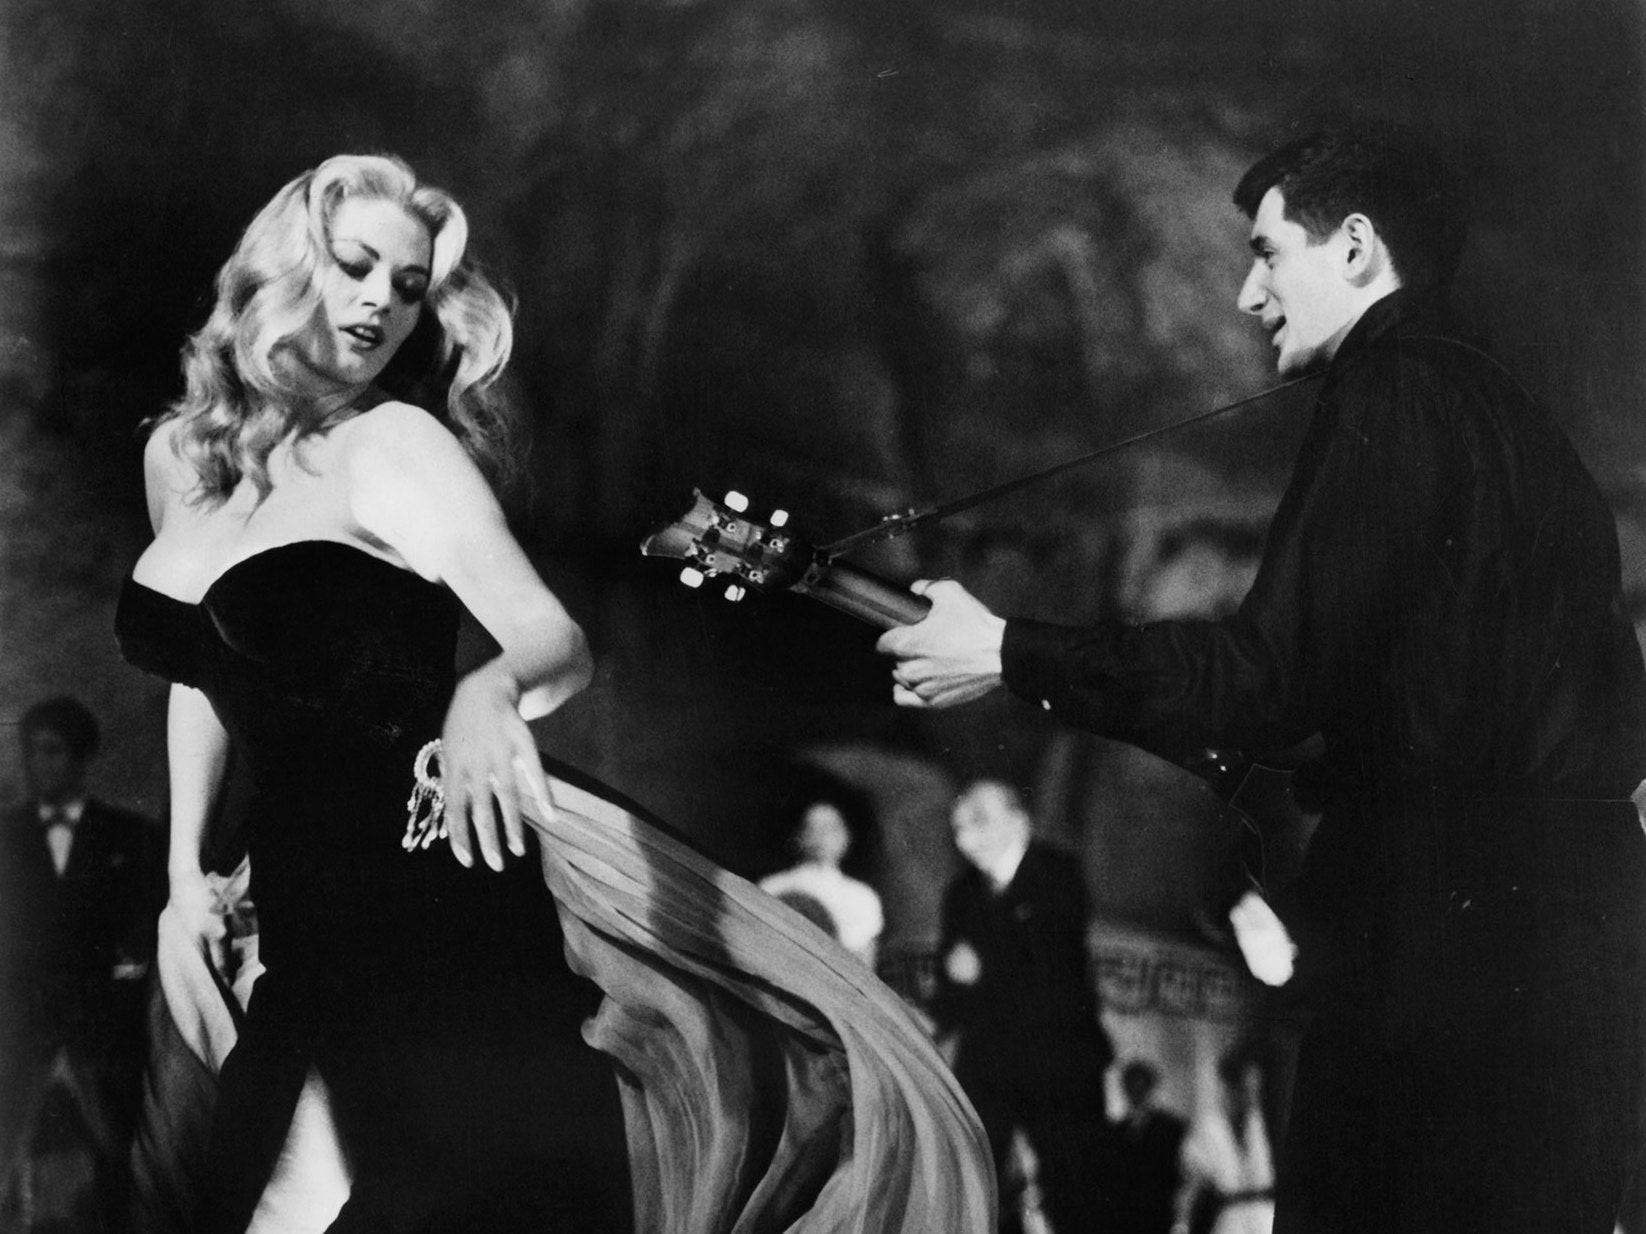 Anita Ekberg dancing in a scene from the film ‘La Dolce Vita’, 1960